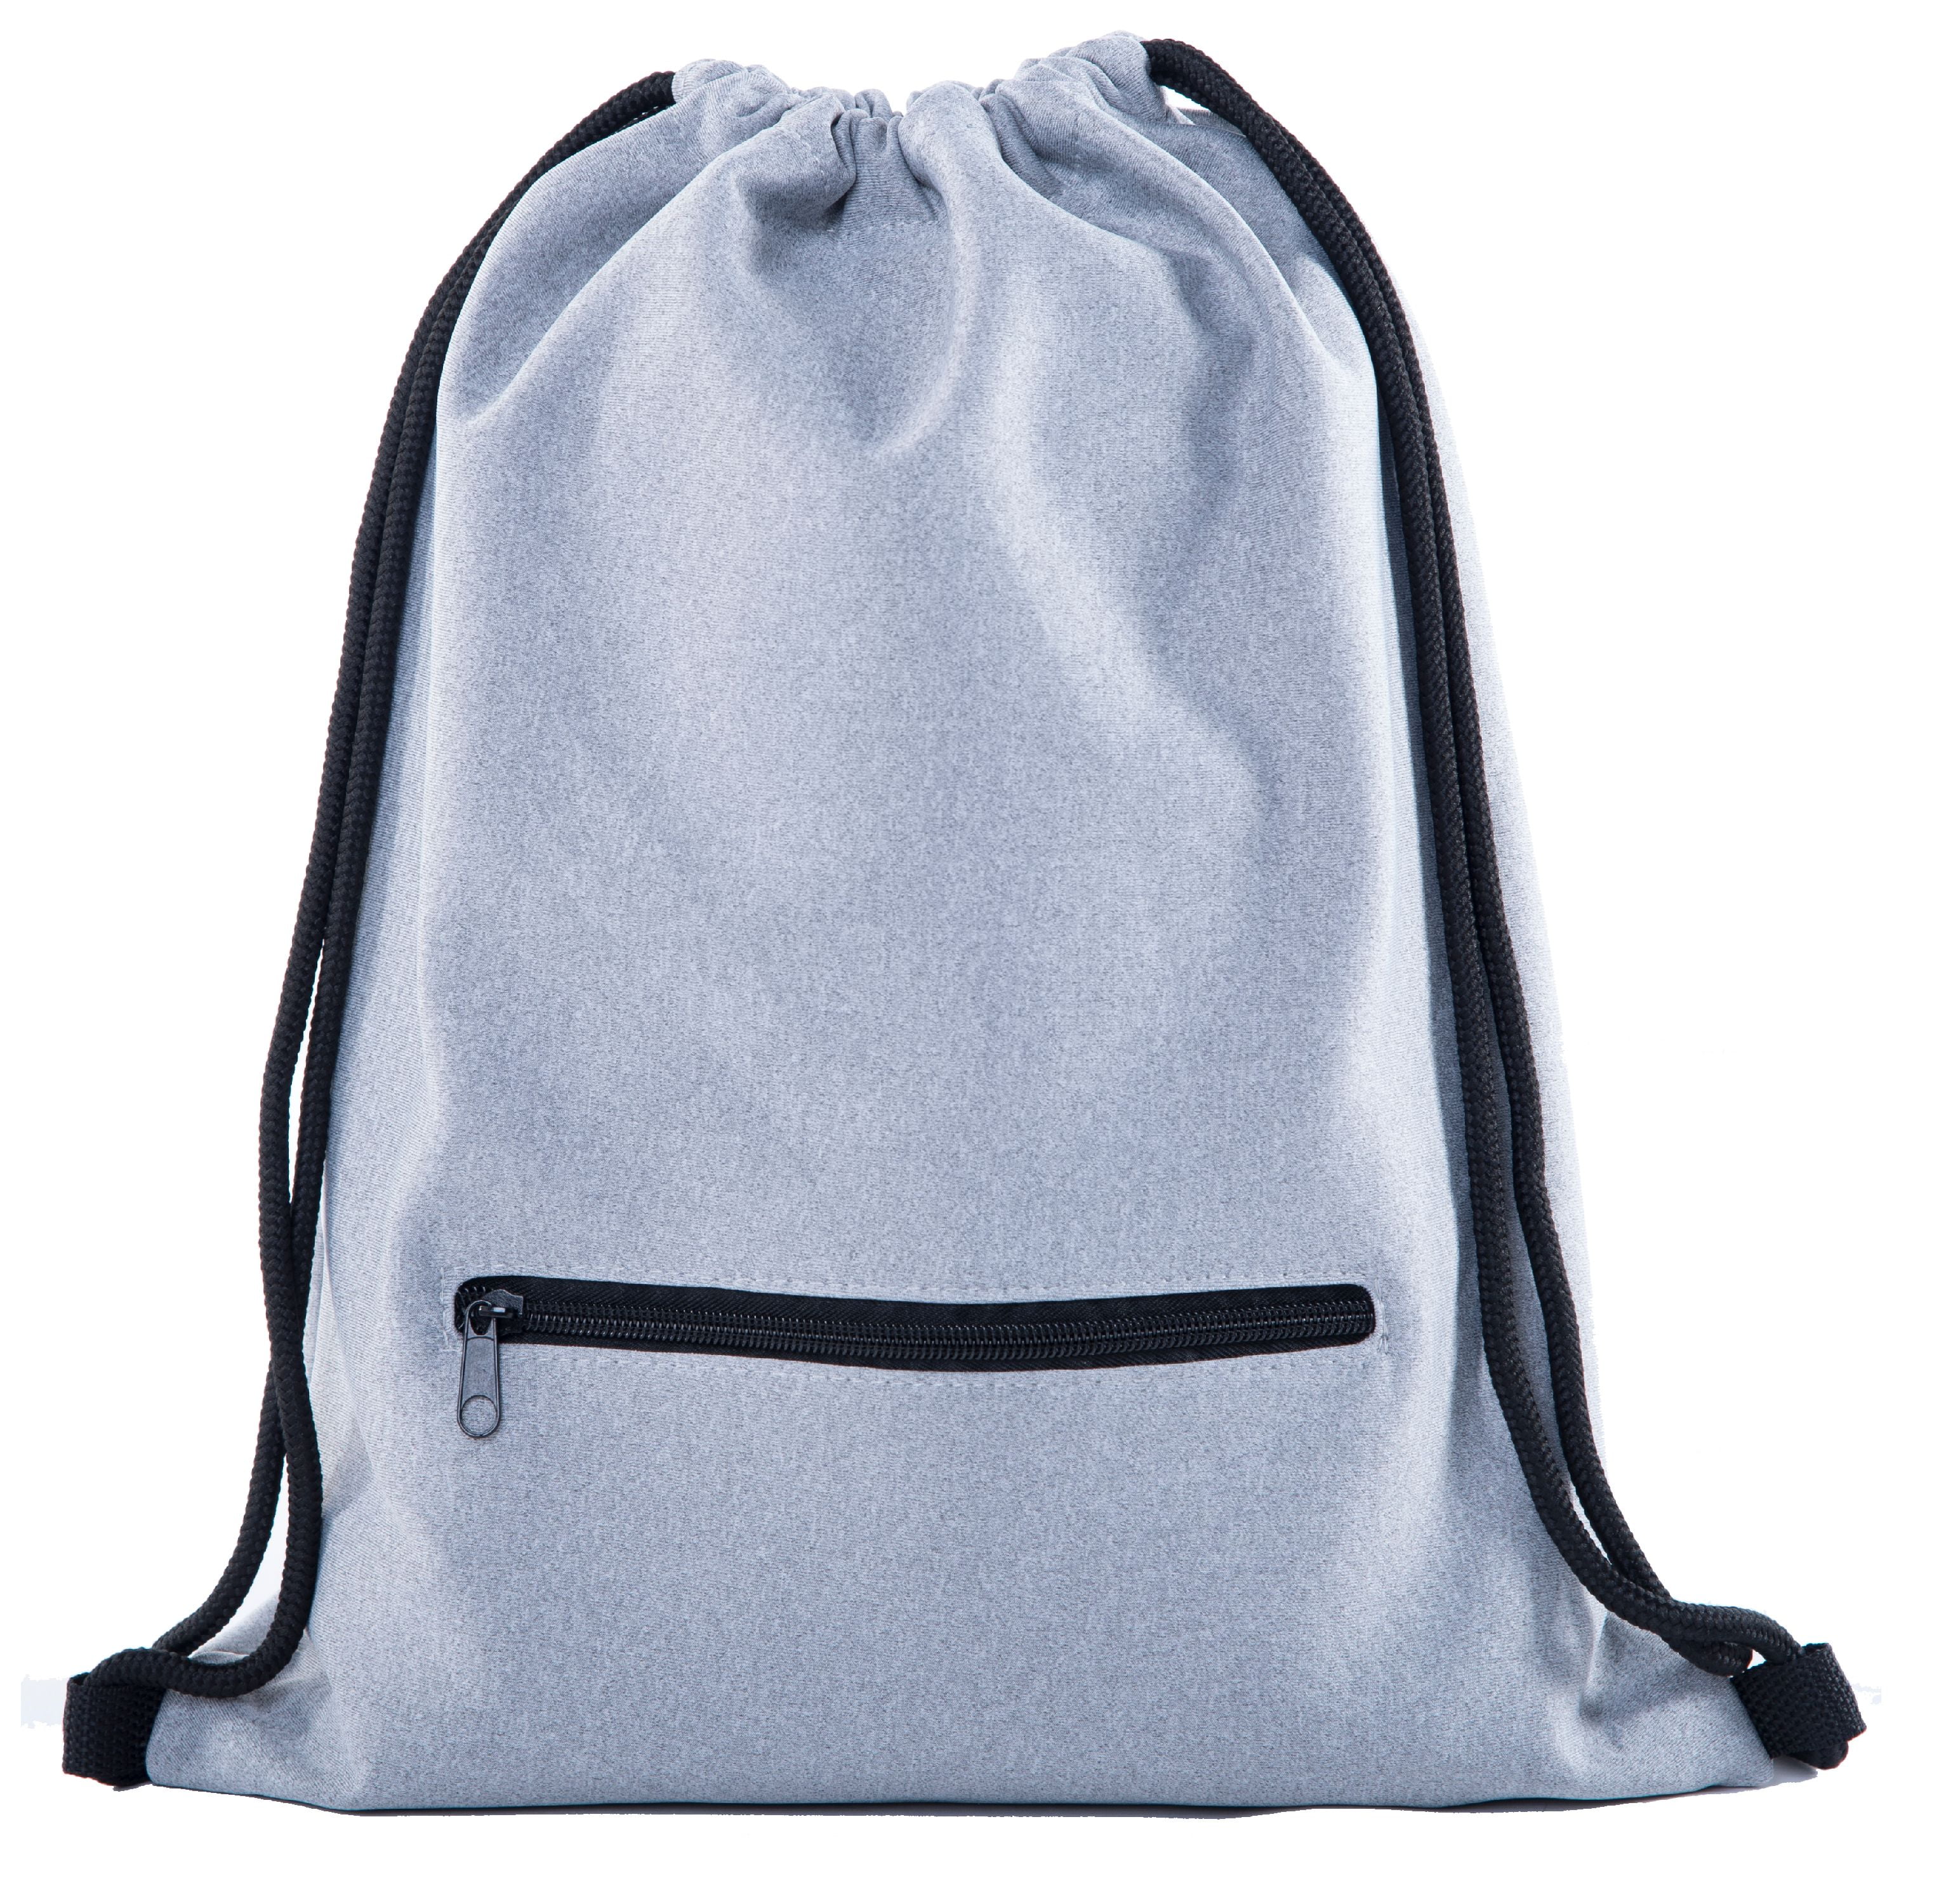 Drawstring Backpack Chemical Instruments Shoulder Bags